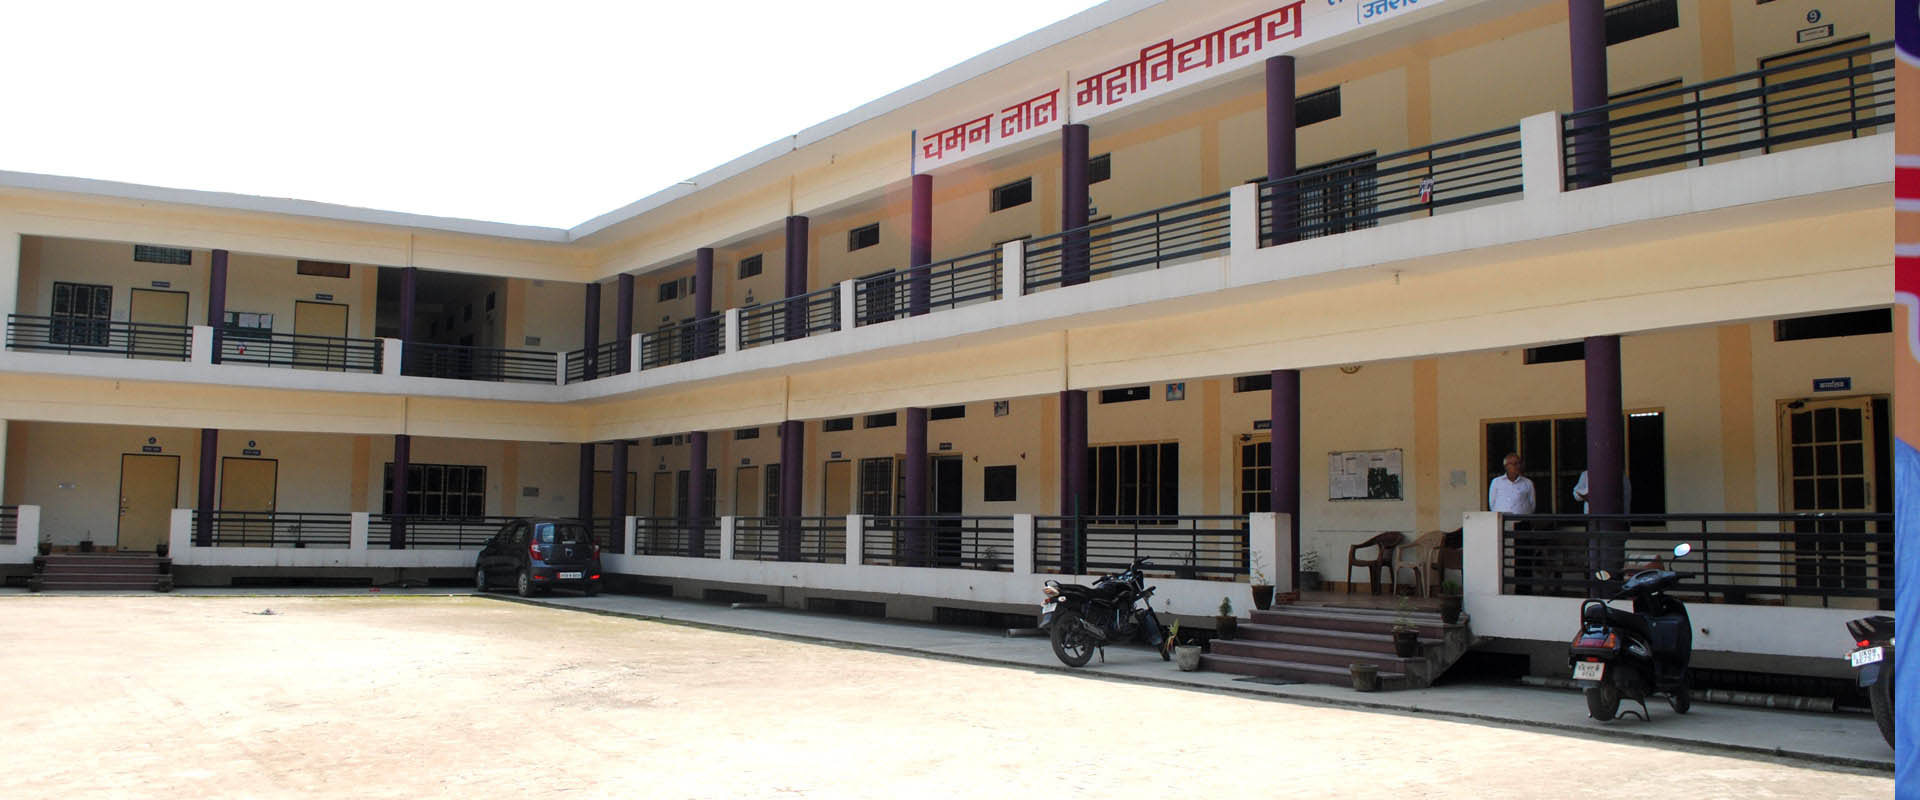 Chamanlal Mahavidyalaya, Haridwar